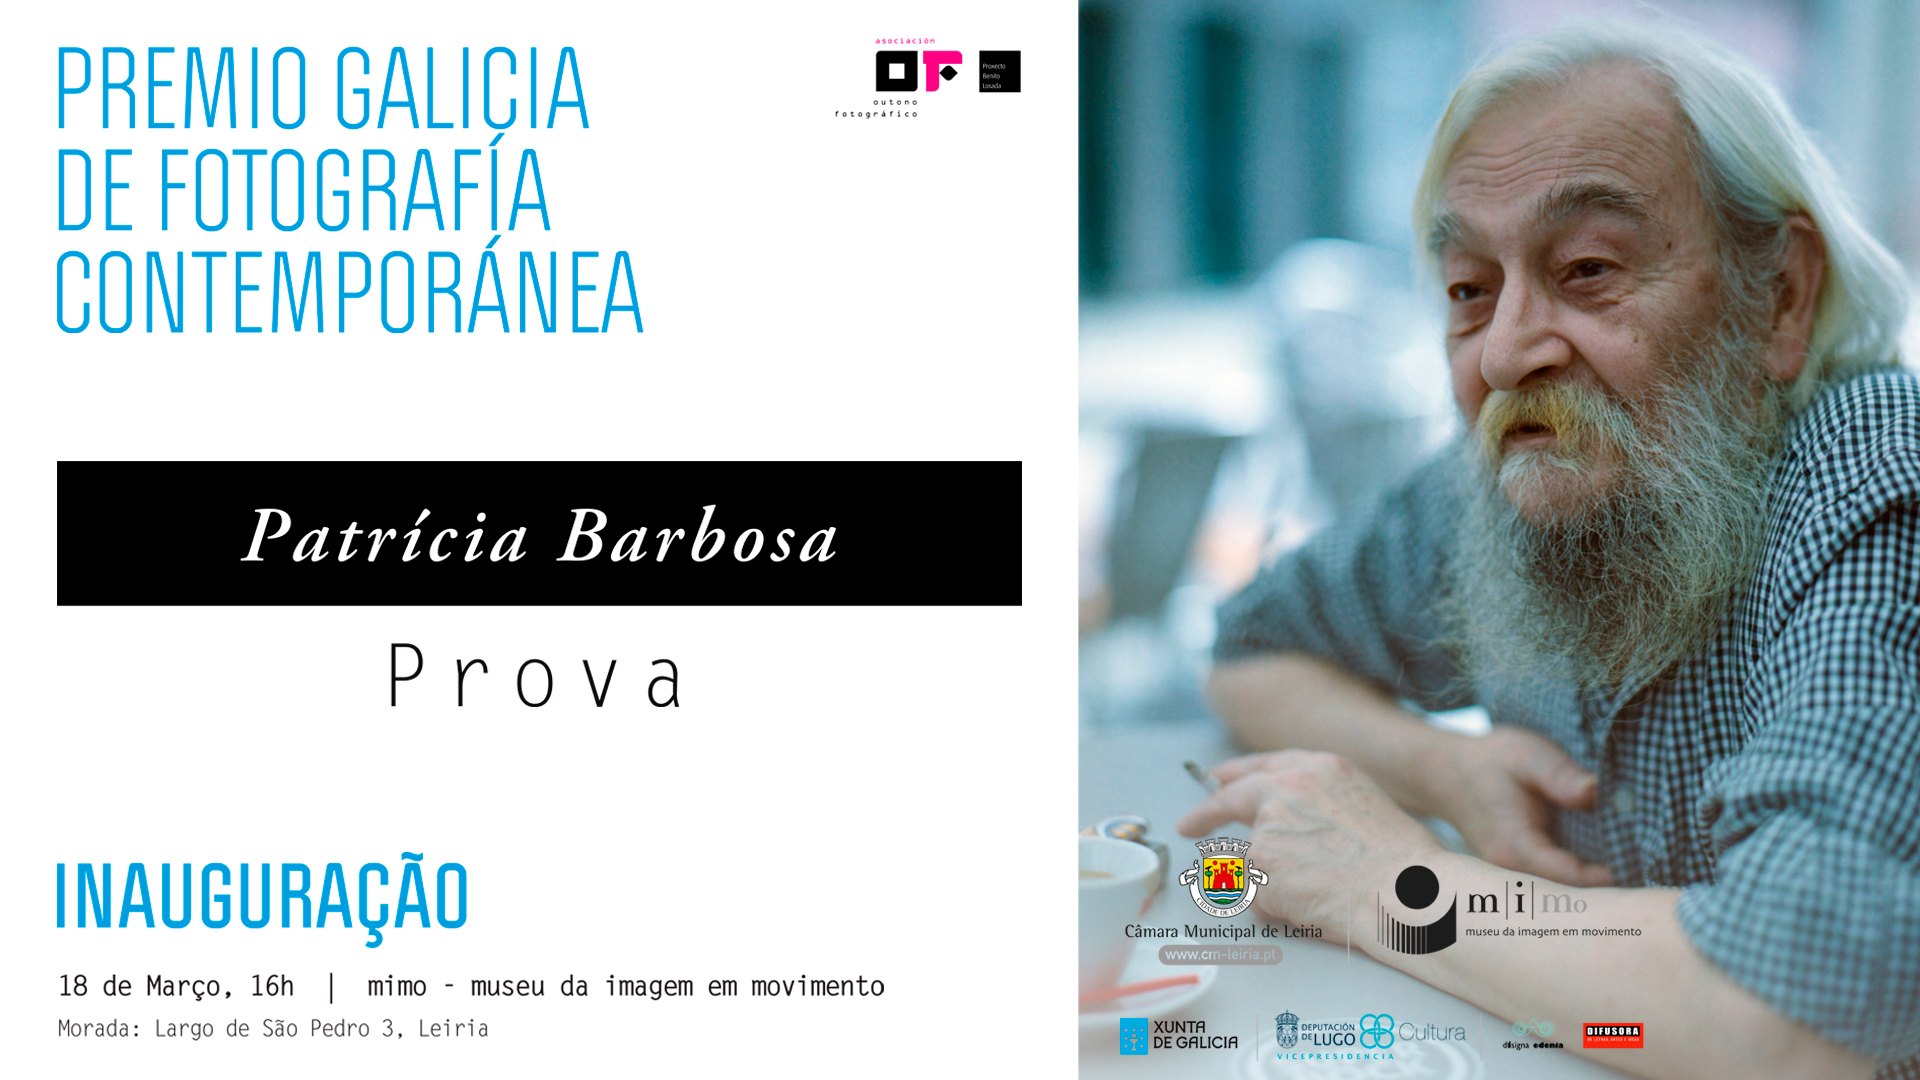 Inauguração de «Prova» de Patrícia Barbosa, Prémio Galiza de Fotografia Contemporânea 2020